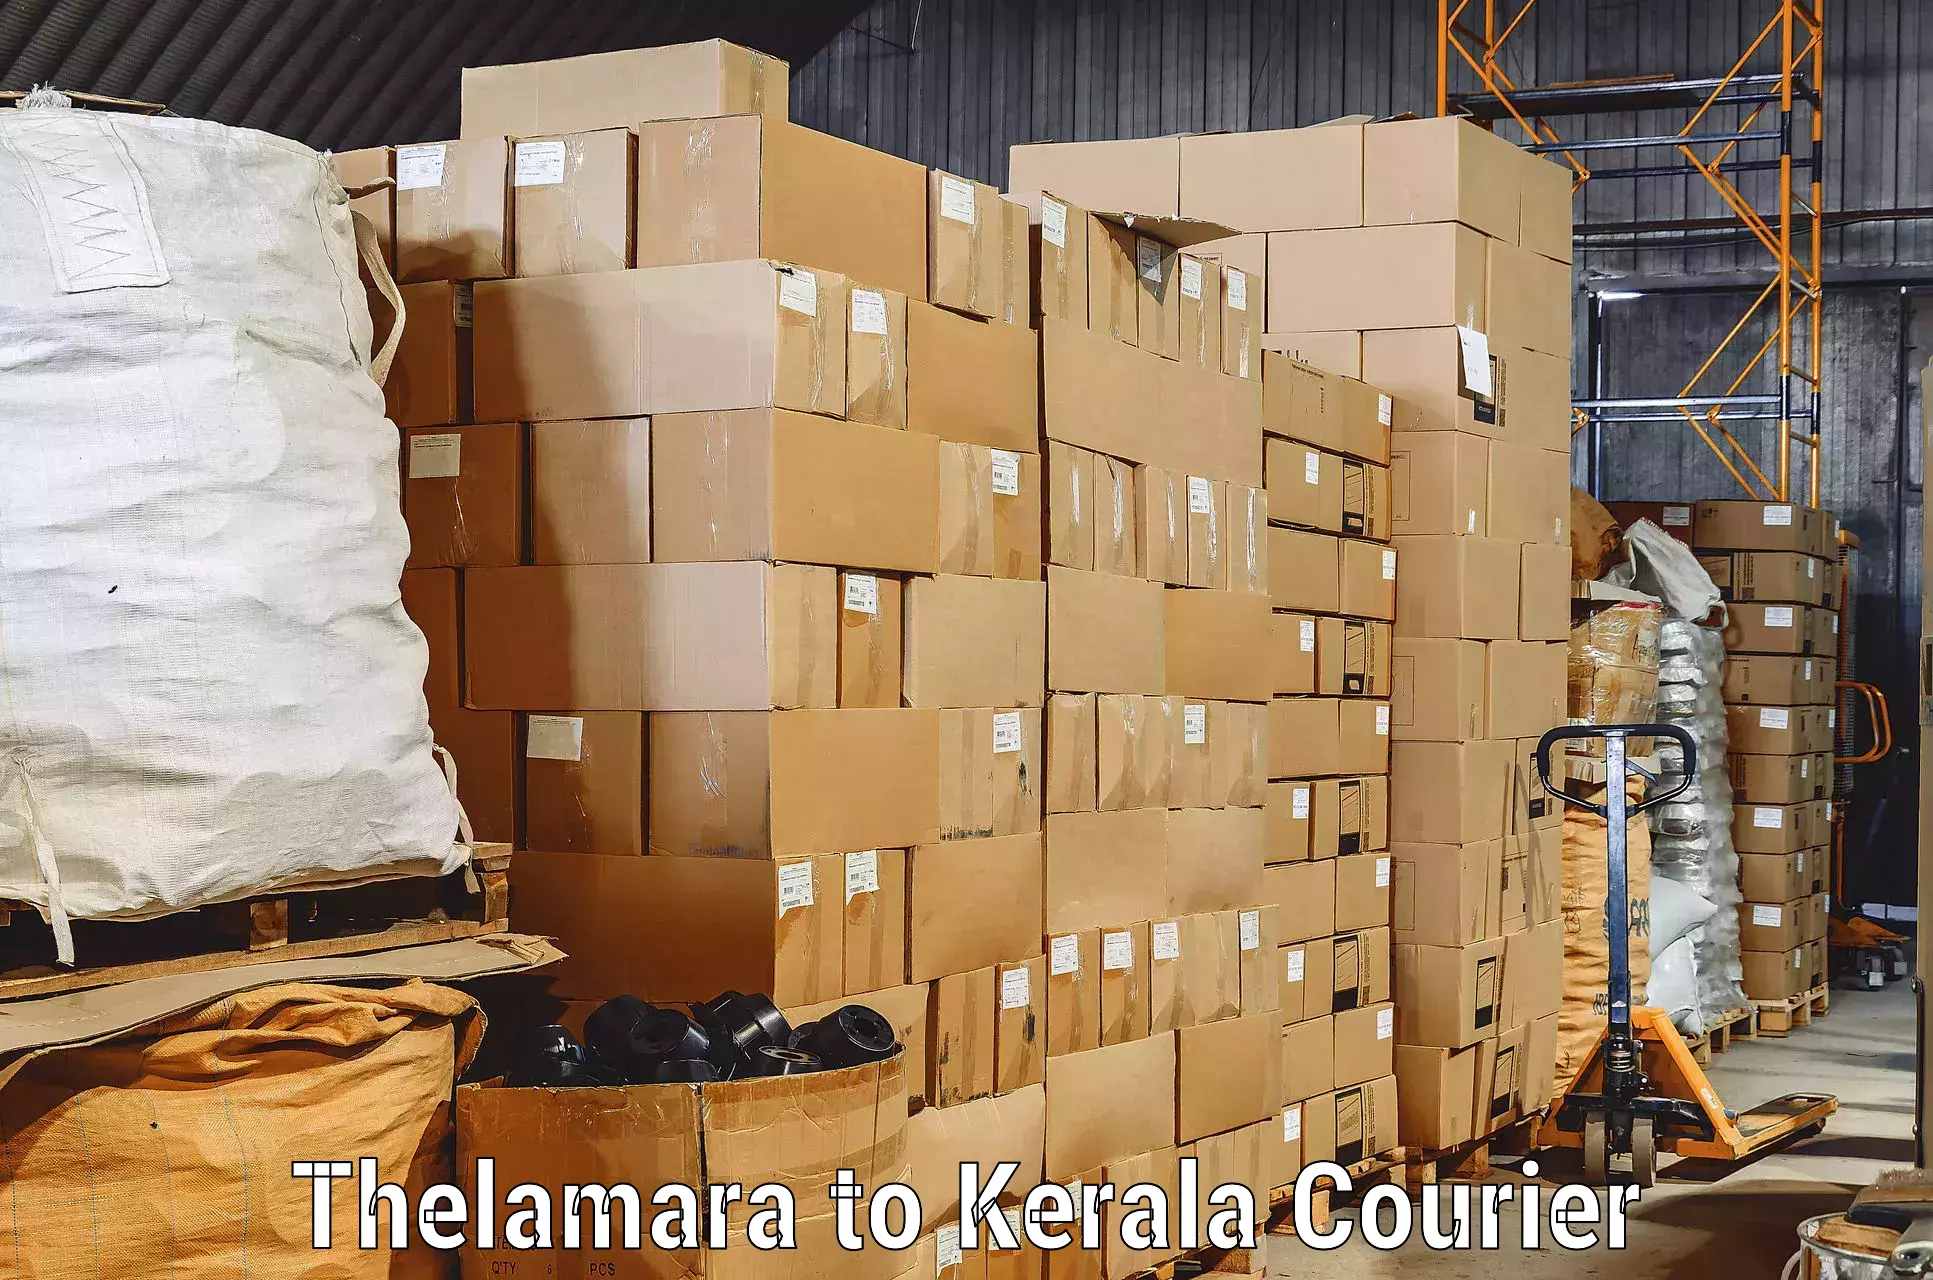 Moving and storage services Thelamara to Kalanjoor